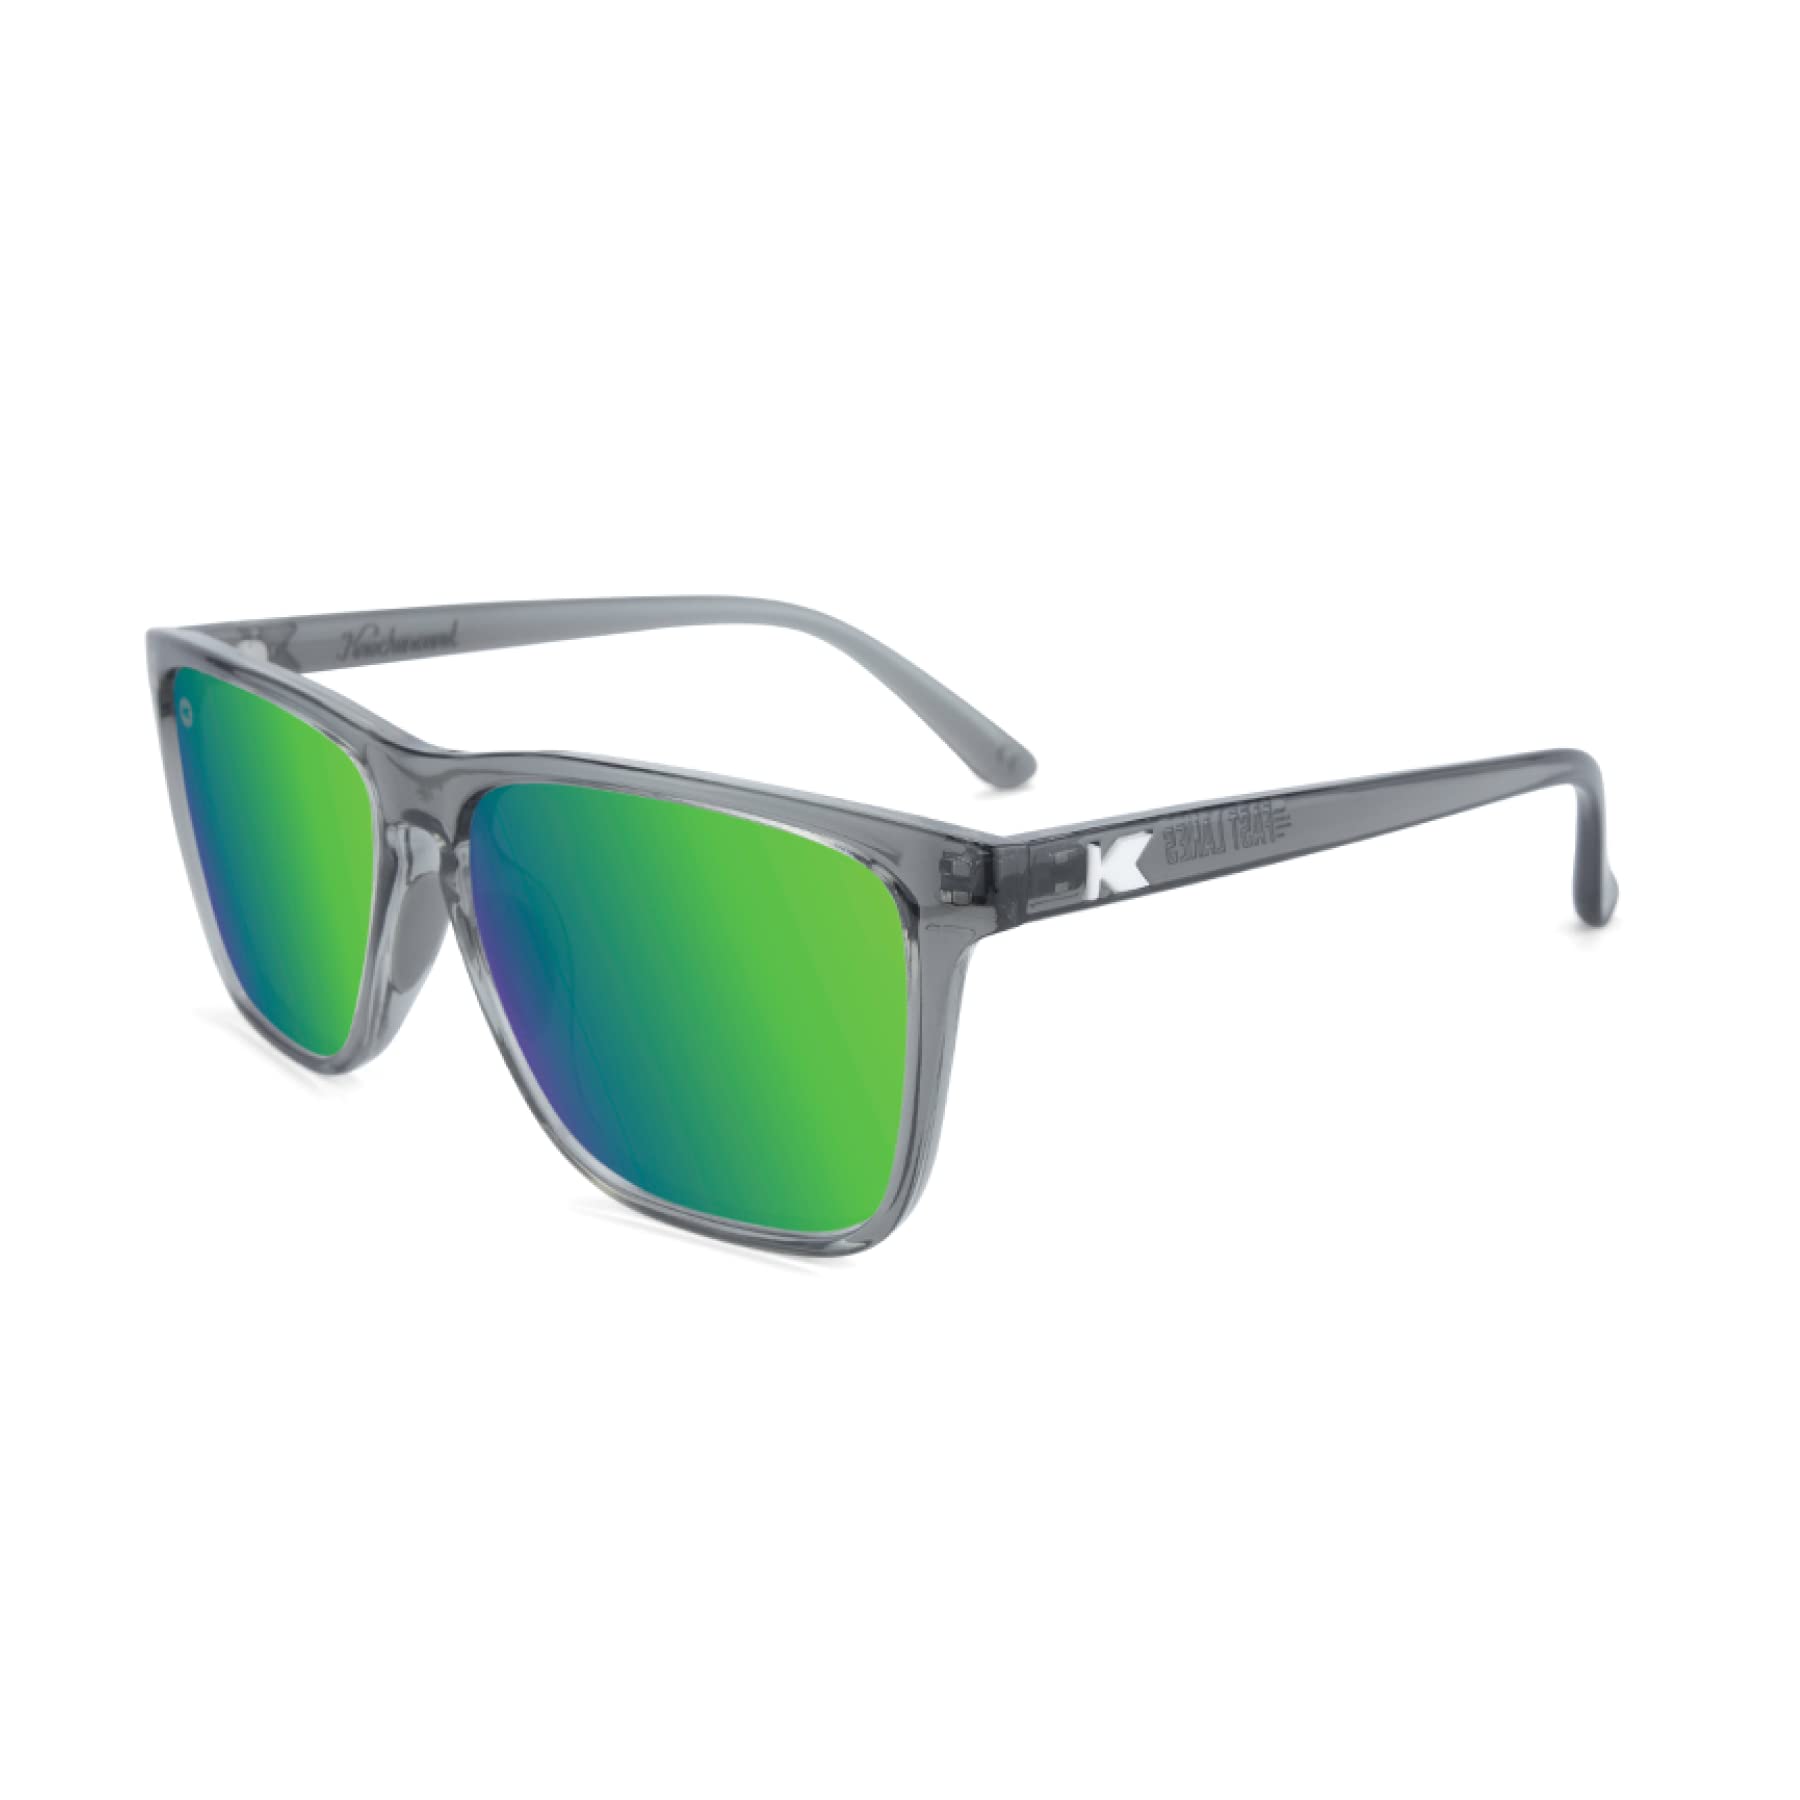 Knockaround Fast Lanes Sport - Polarized Running Sunglasses for Women & Men  - Impact Resistant Lenses & Full